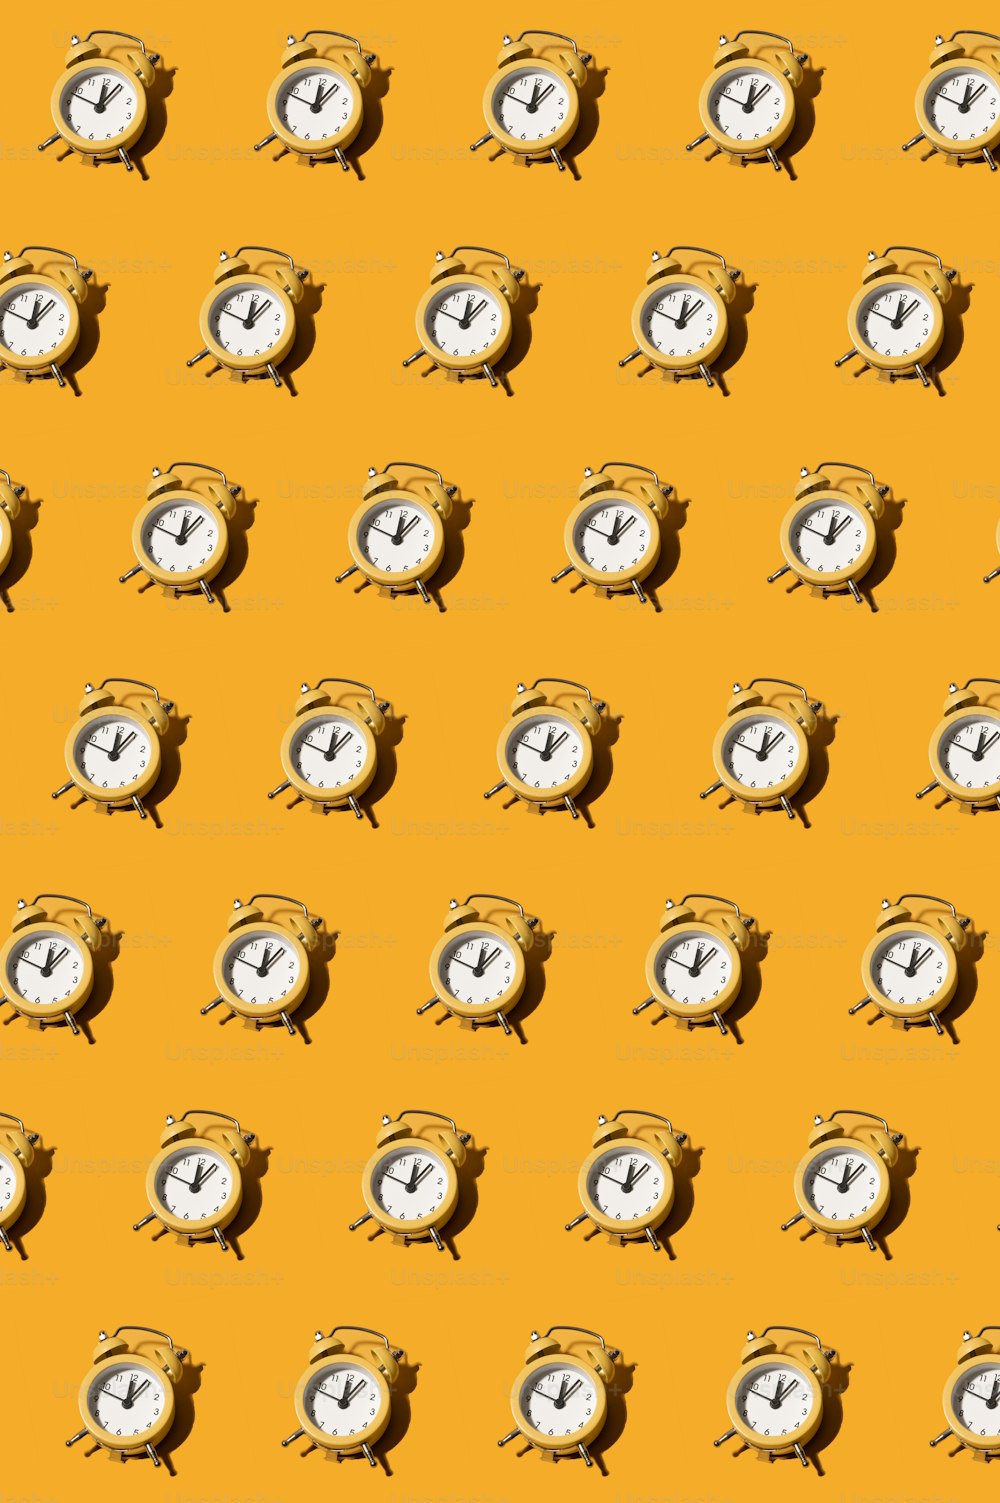 um padrão de relógios em um fundo amarelo